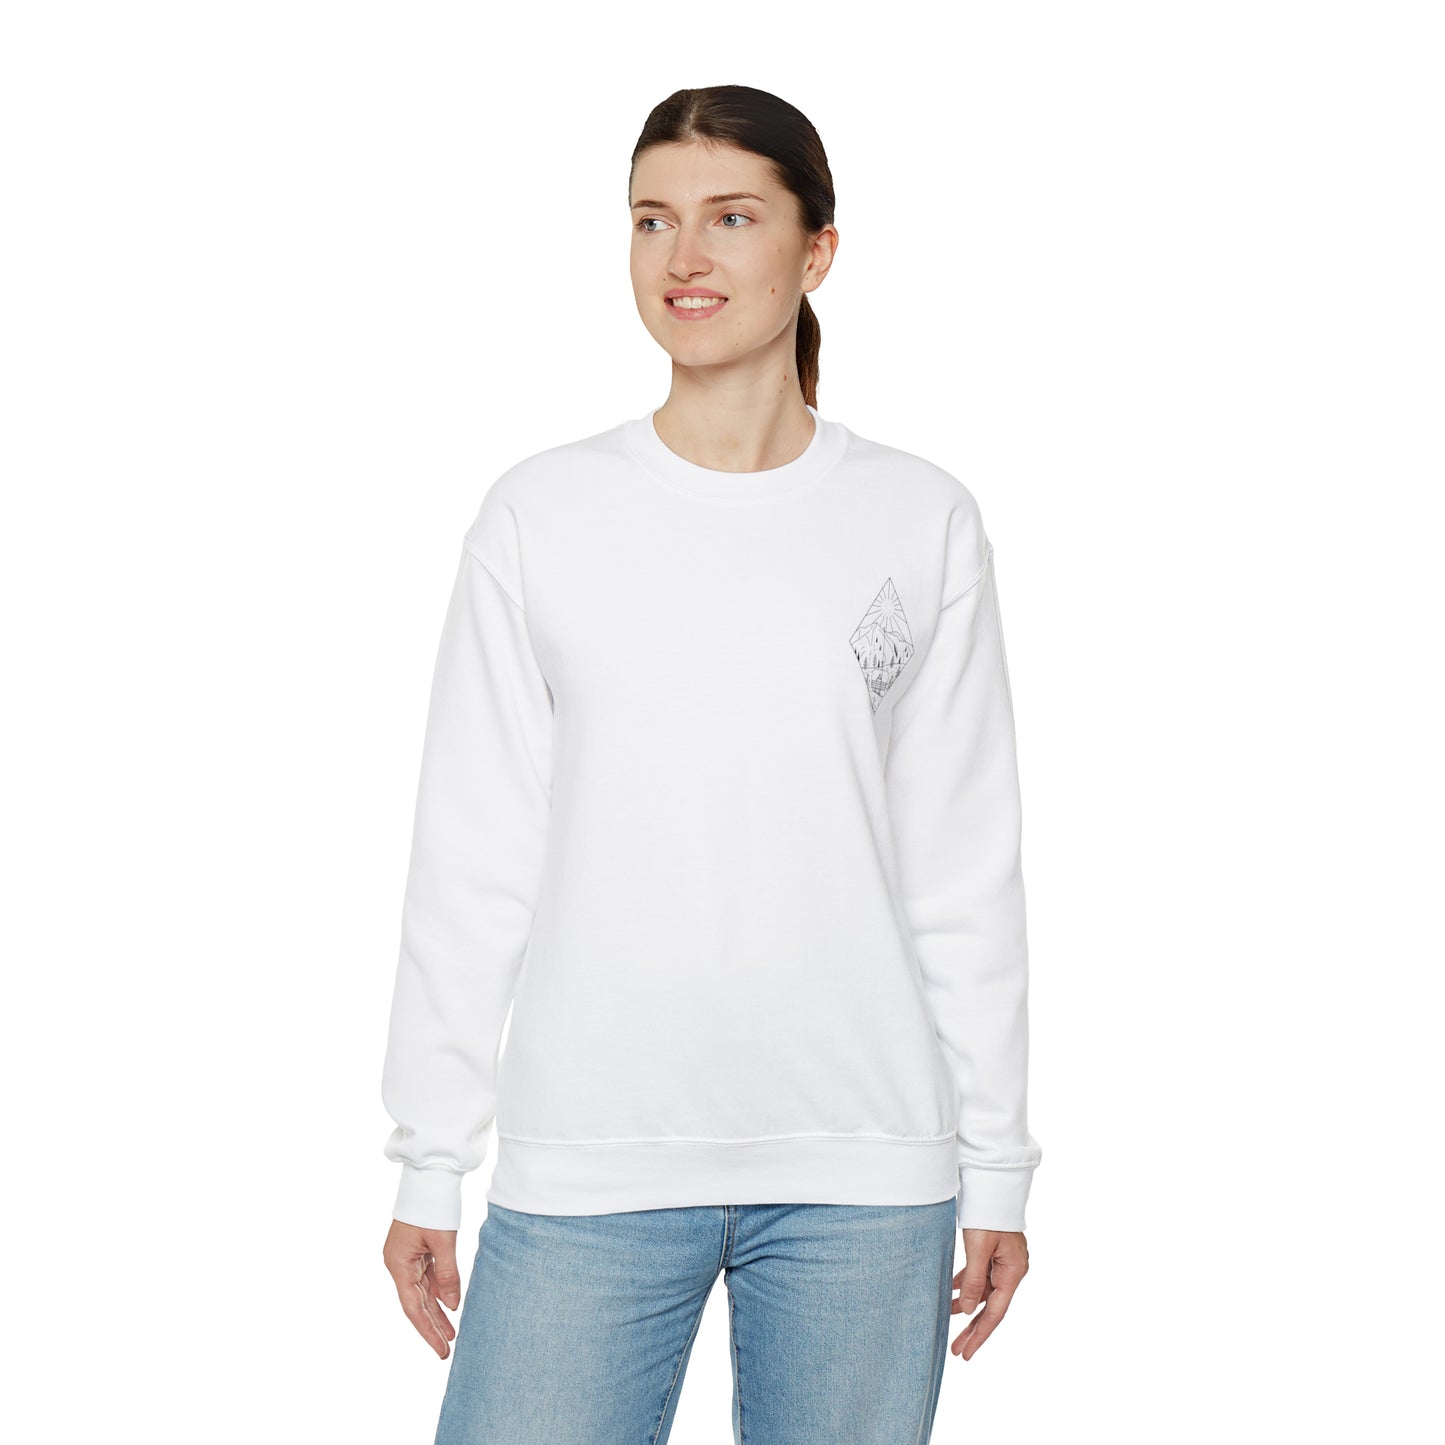 Snowboarder - blk - Unisex Heavy Blend™ Crewneck Sweatshirt